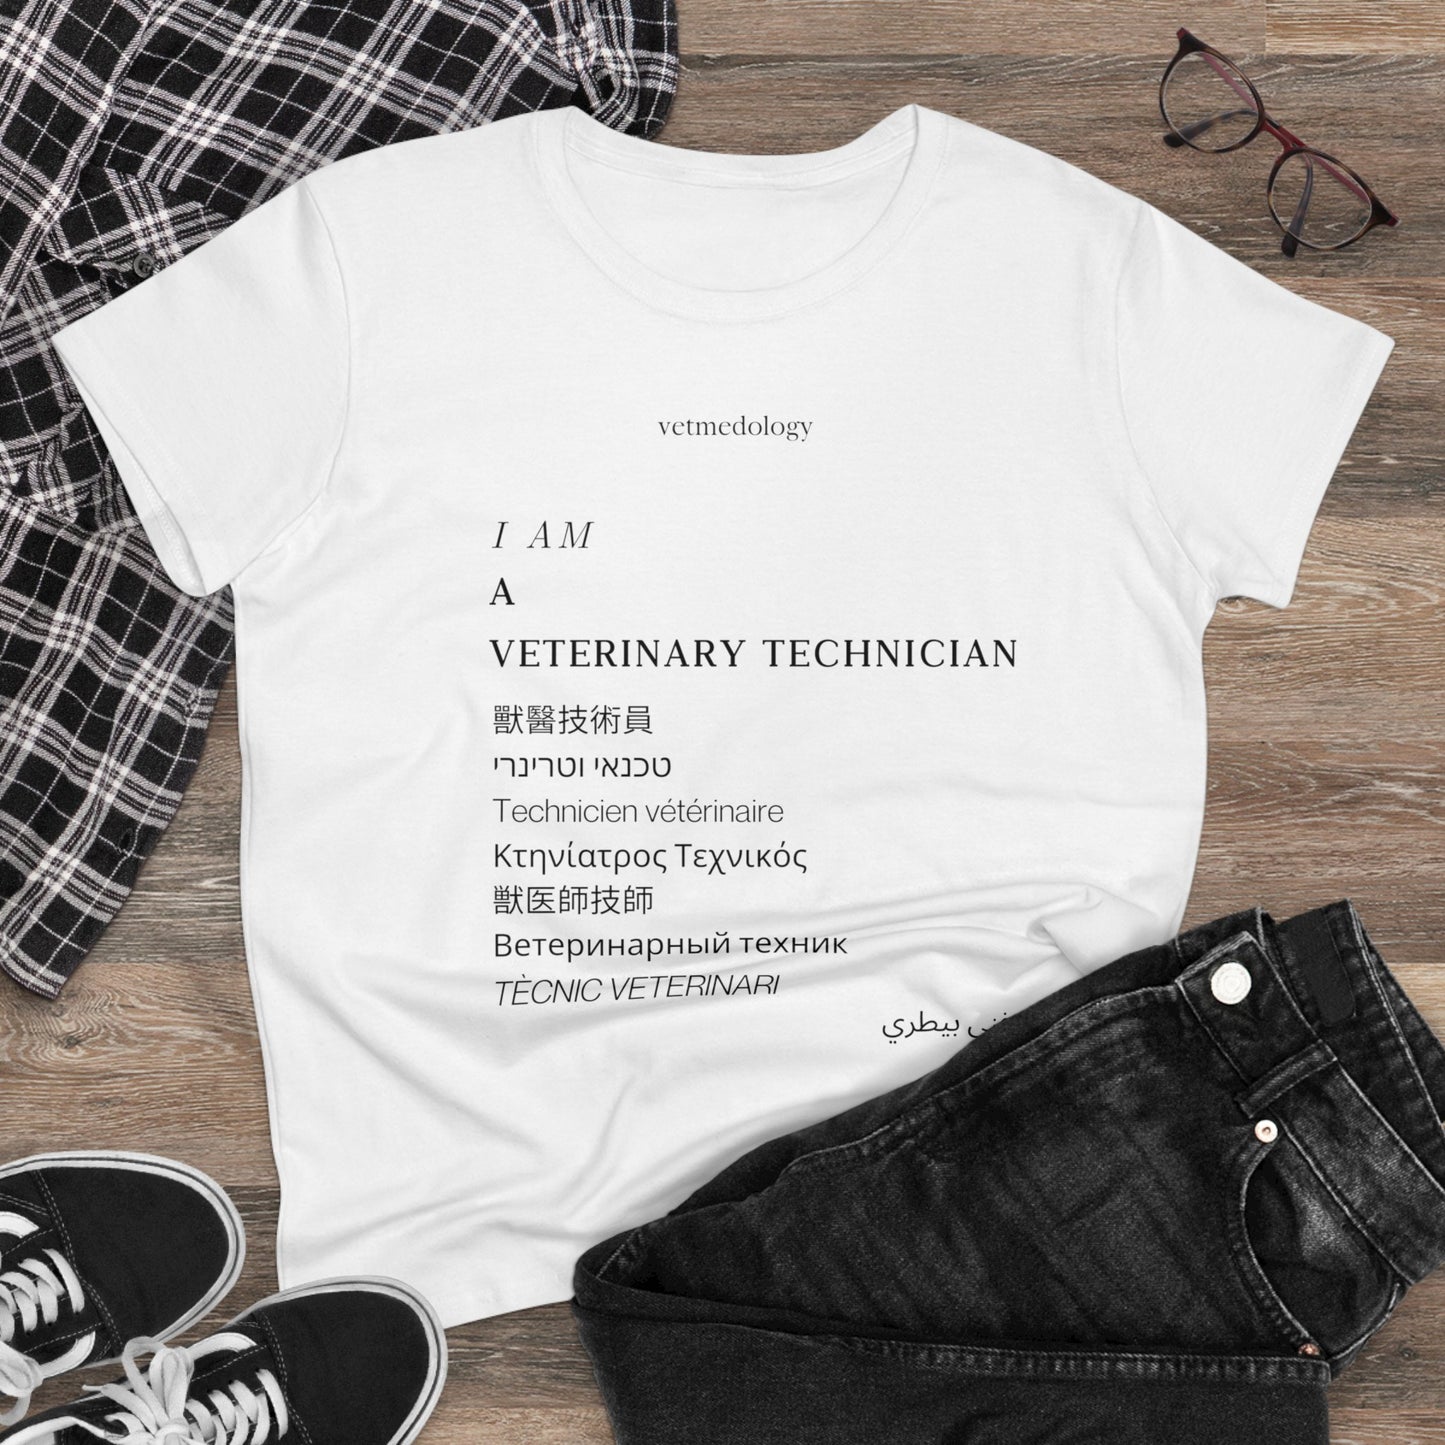 vetmedology Multilingual Veterinary Technician Women's Midweight Cotton Tee